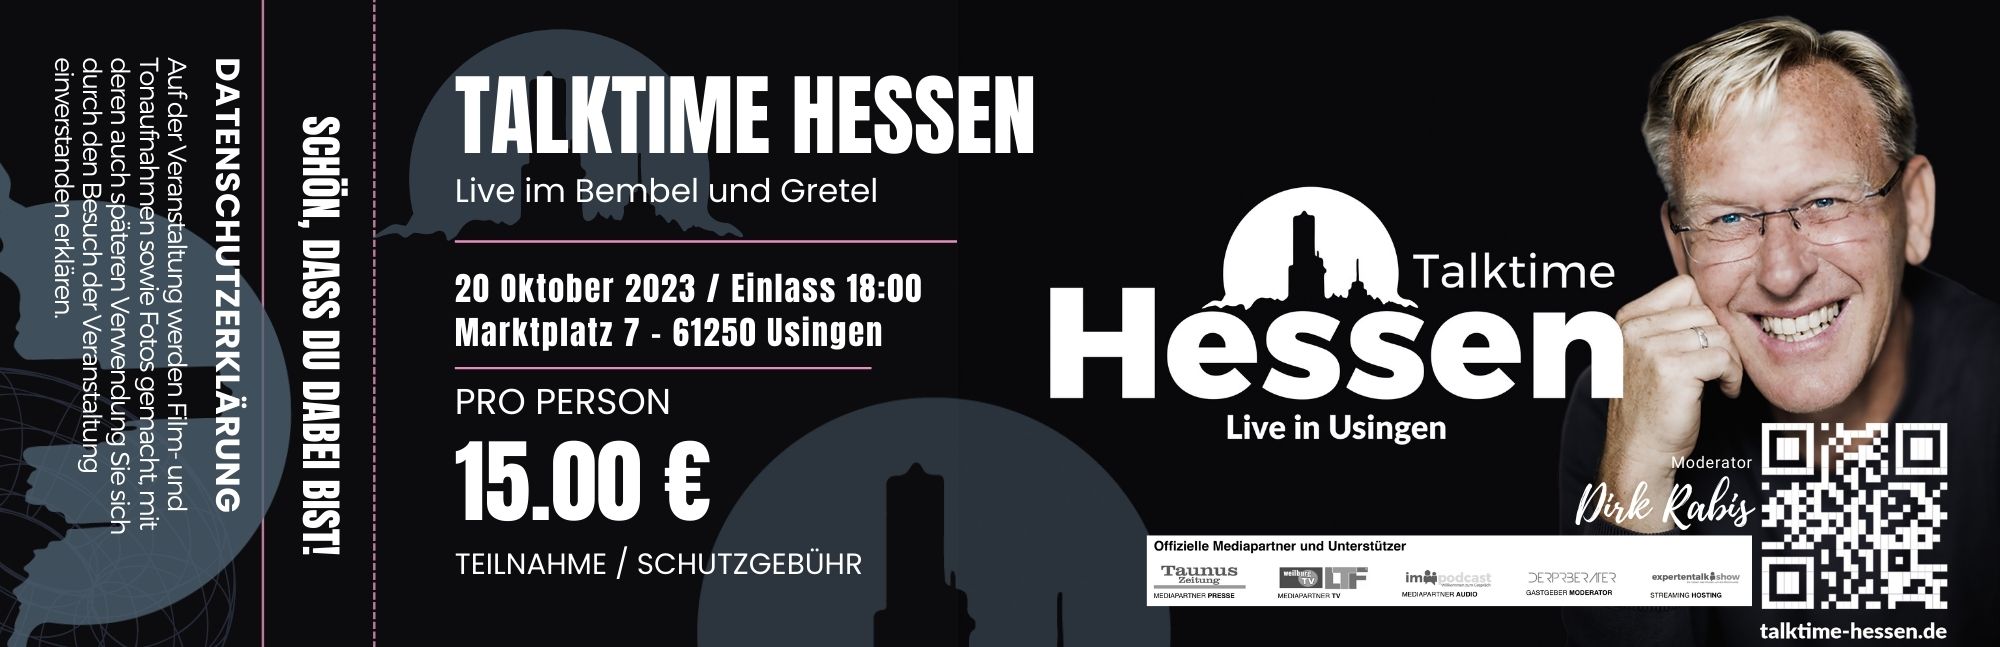 Talktime Hessen Ticket Buchung zur Talkshow am 20-10-23 im Bembel und Gretel Ankuendigung-04-09-23